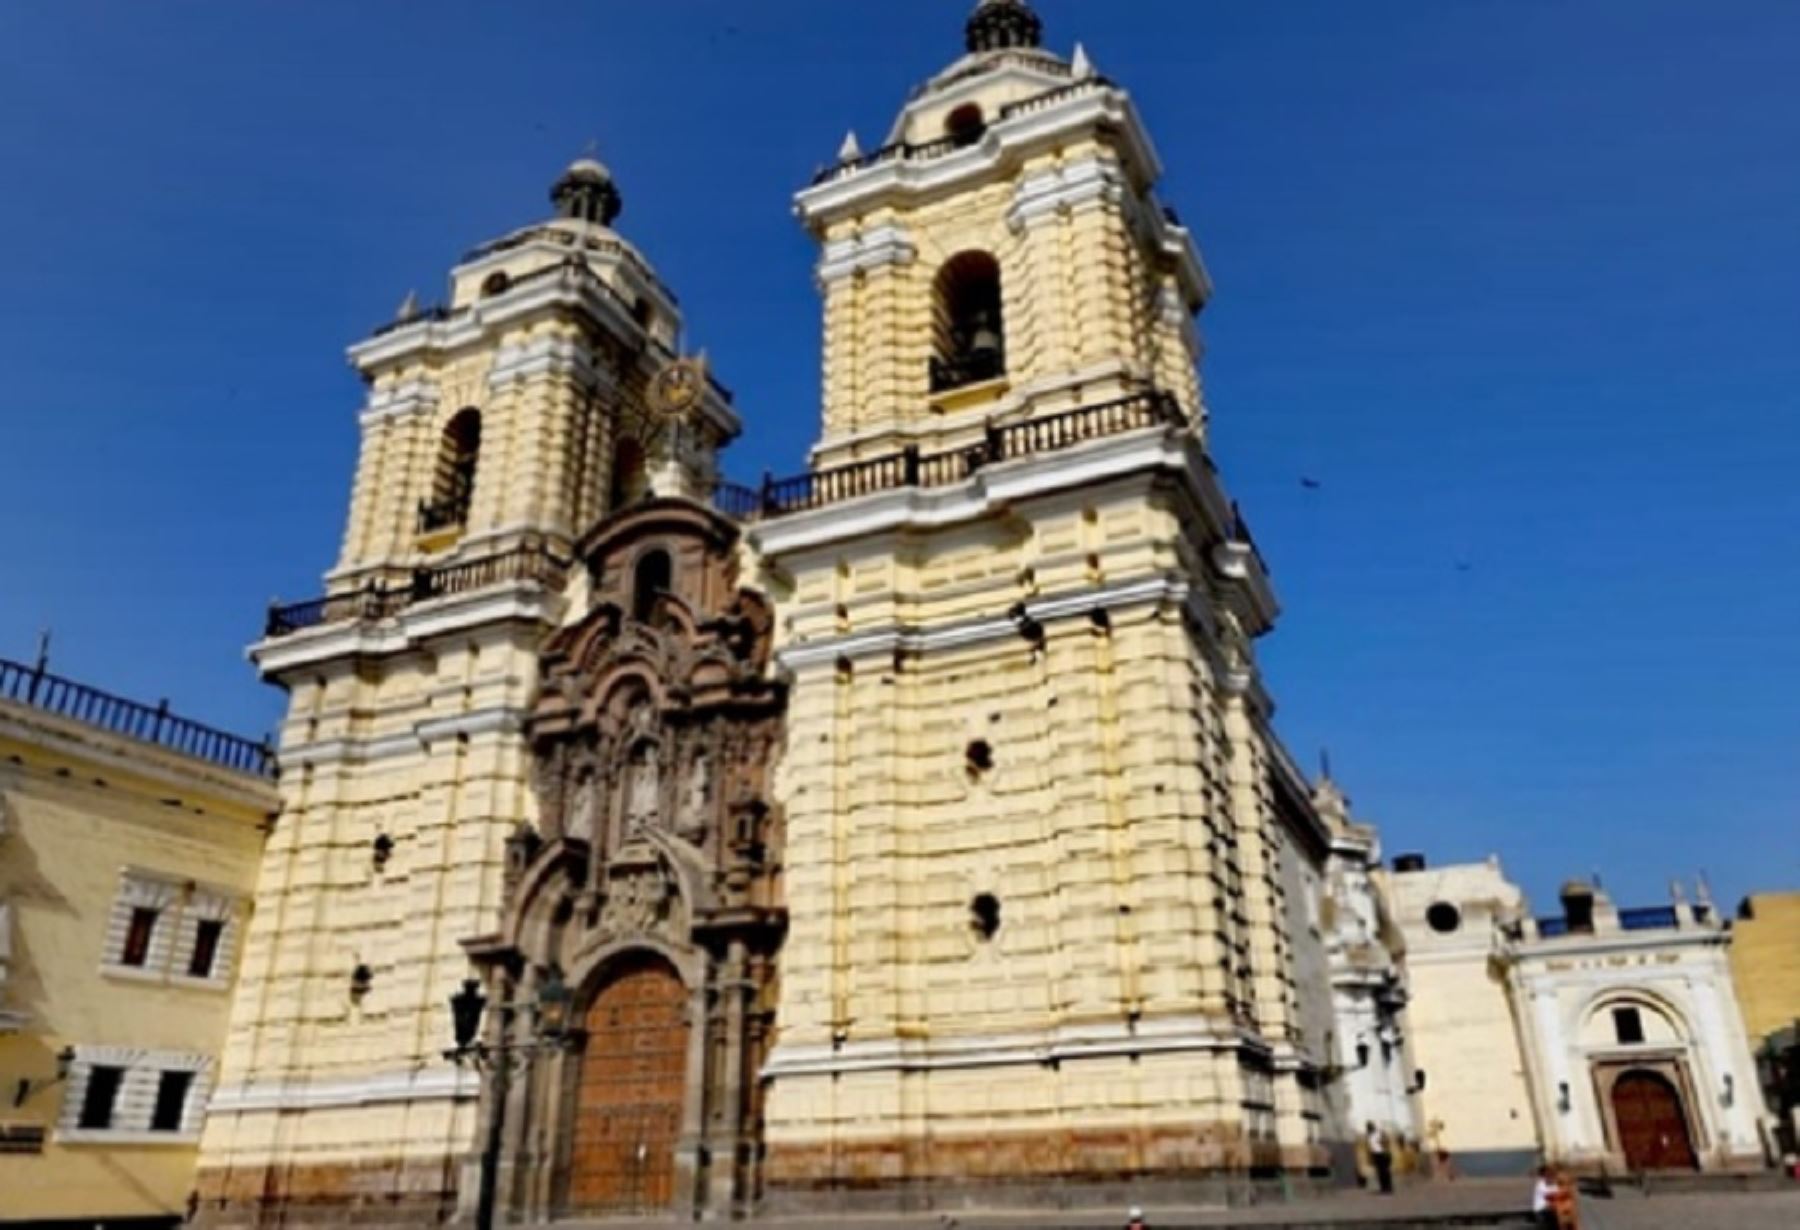 La Iglesia San Francisco de Asís, ubicada en el Centro Histórico de Lima, es una de las propiedades inmueble eclesiásticas de notable antigüedad y más representativas inscritas en la Superintendencia Nacional de los Registros Públicos